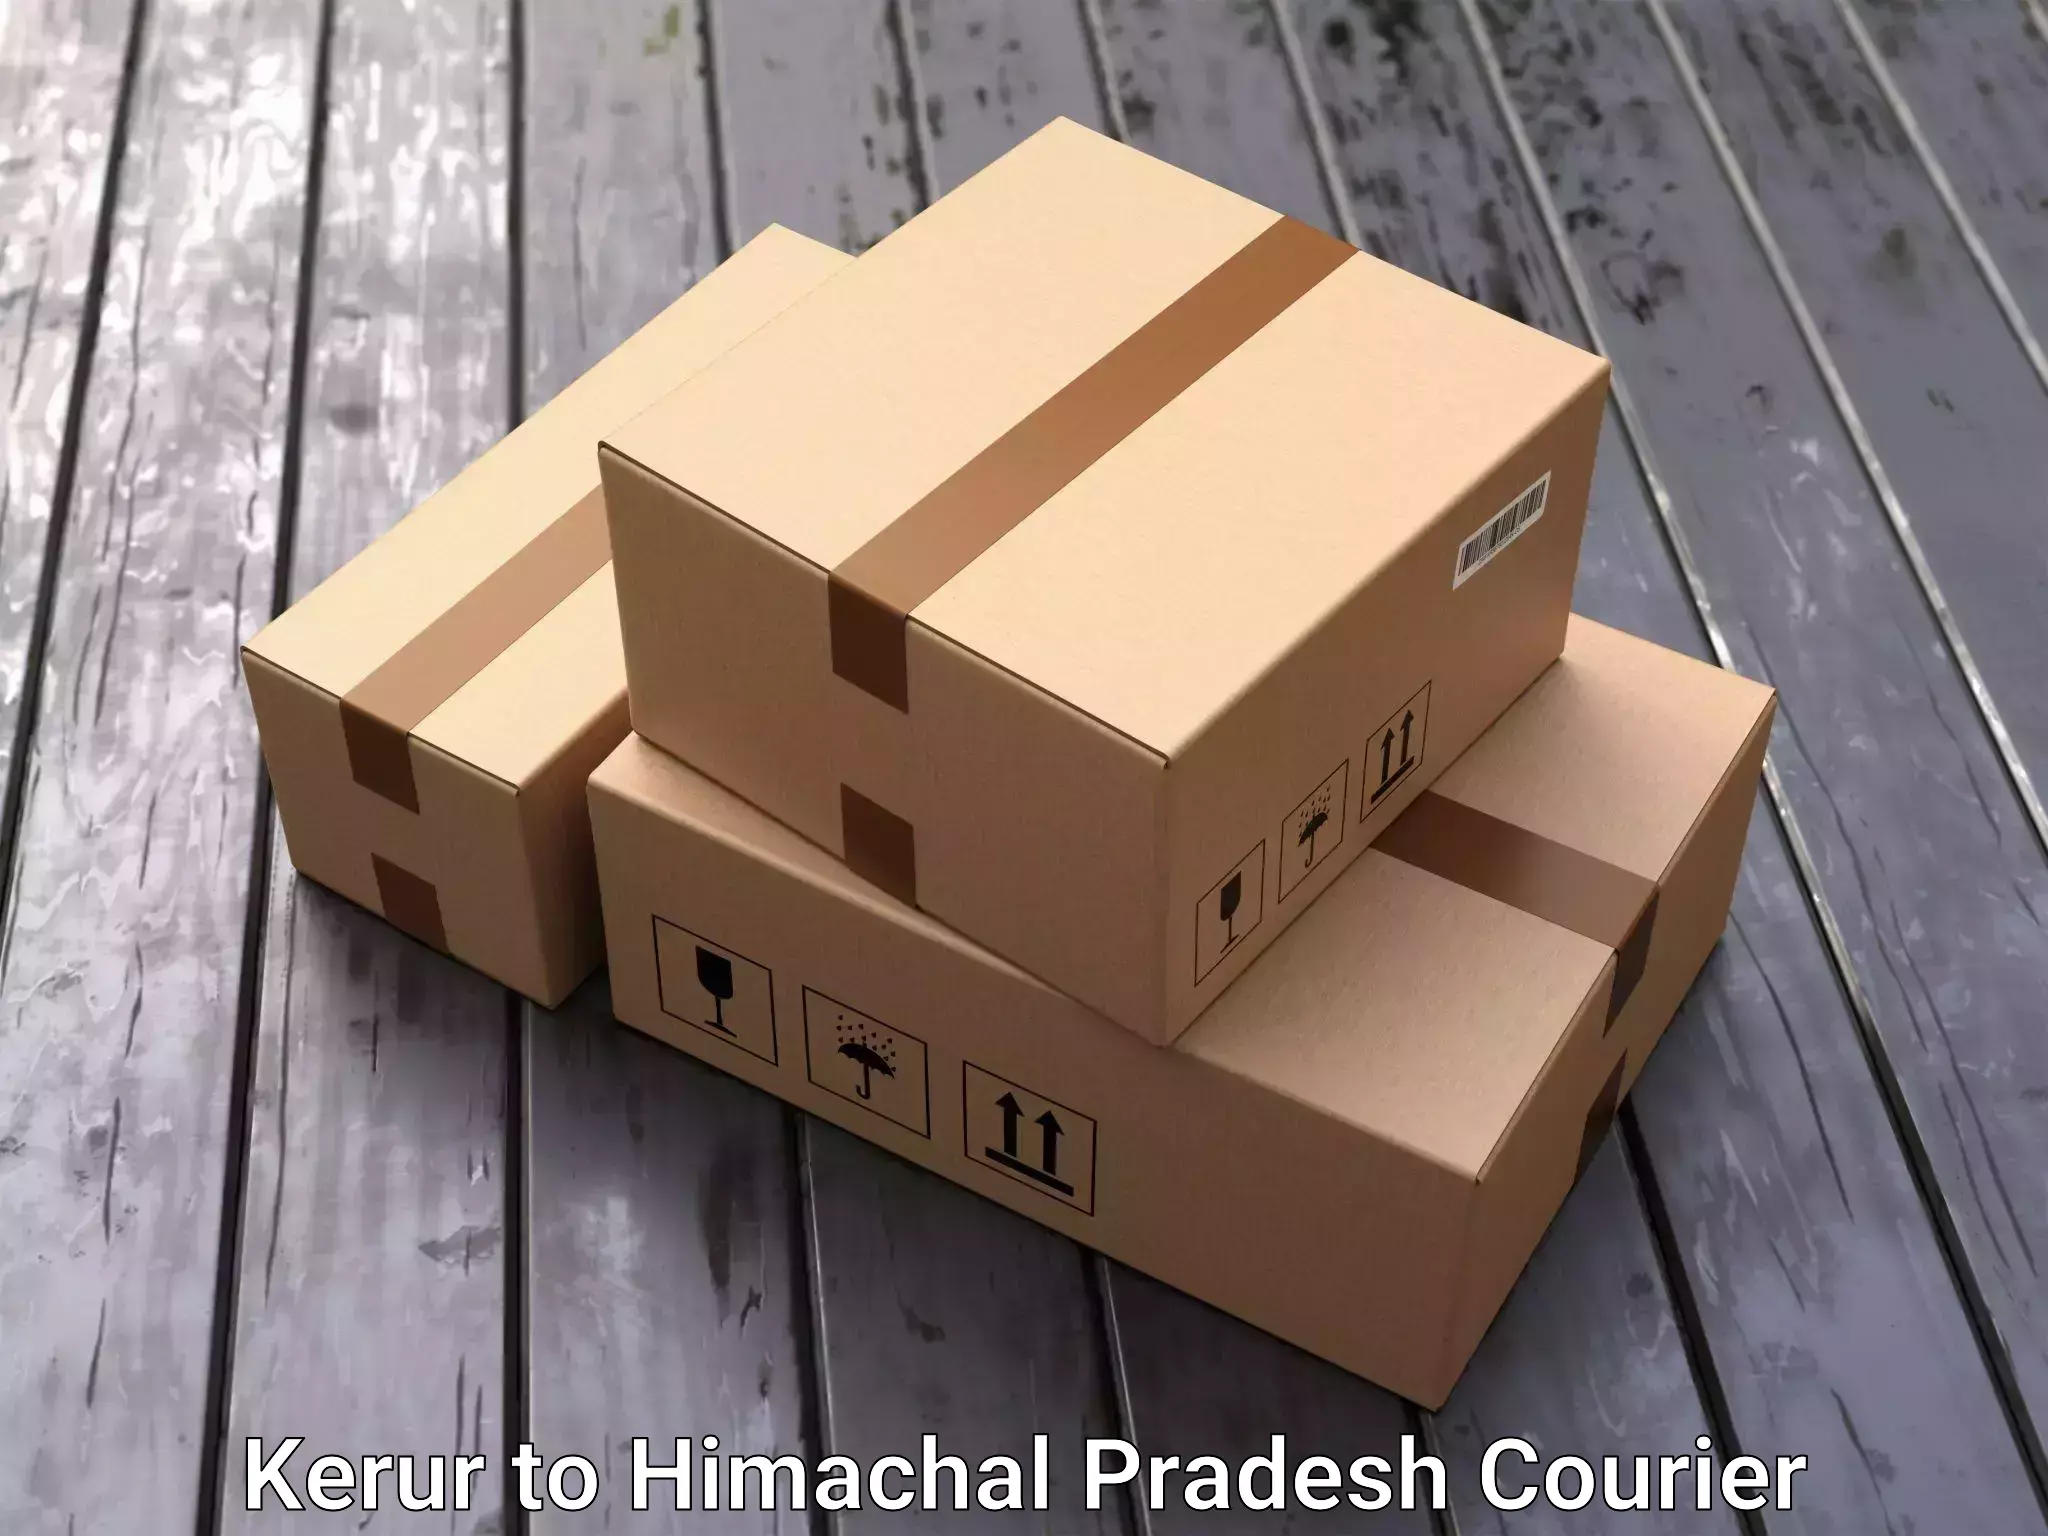 Furniture moving experts Kerur to Jukhala